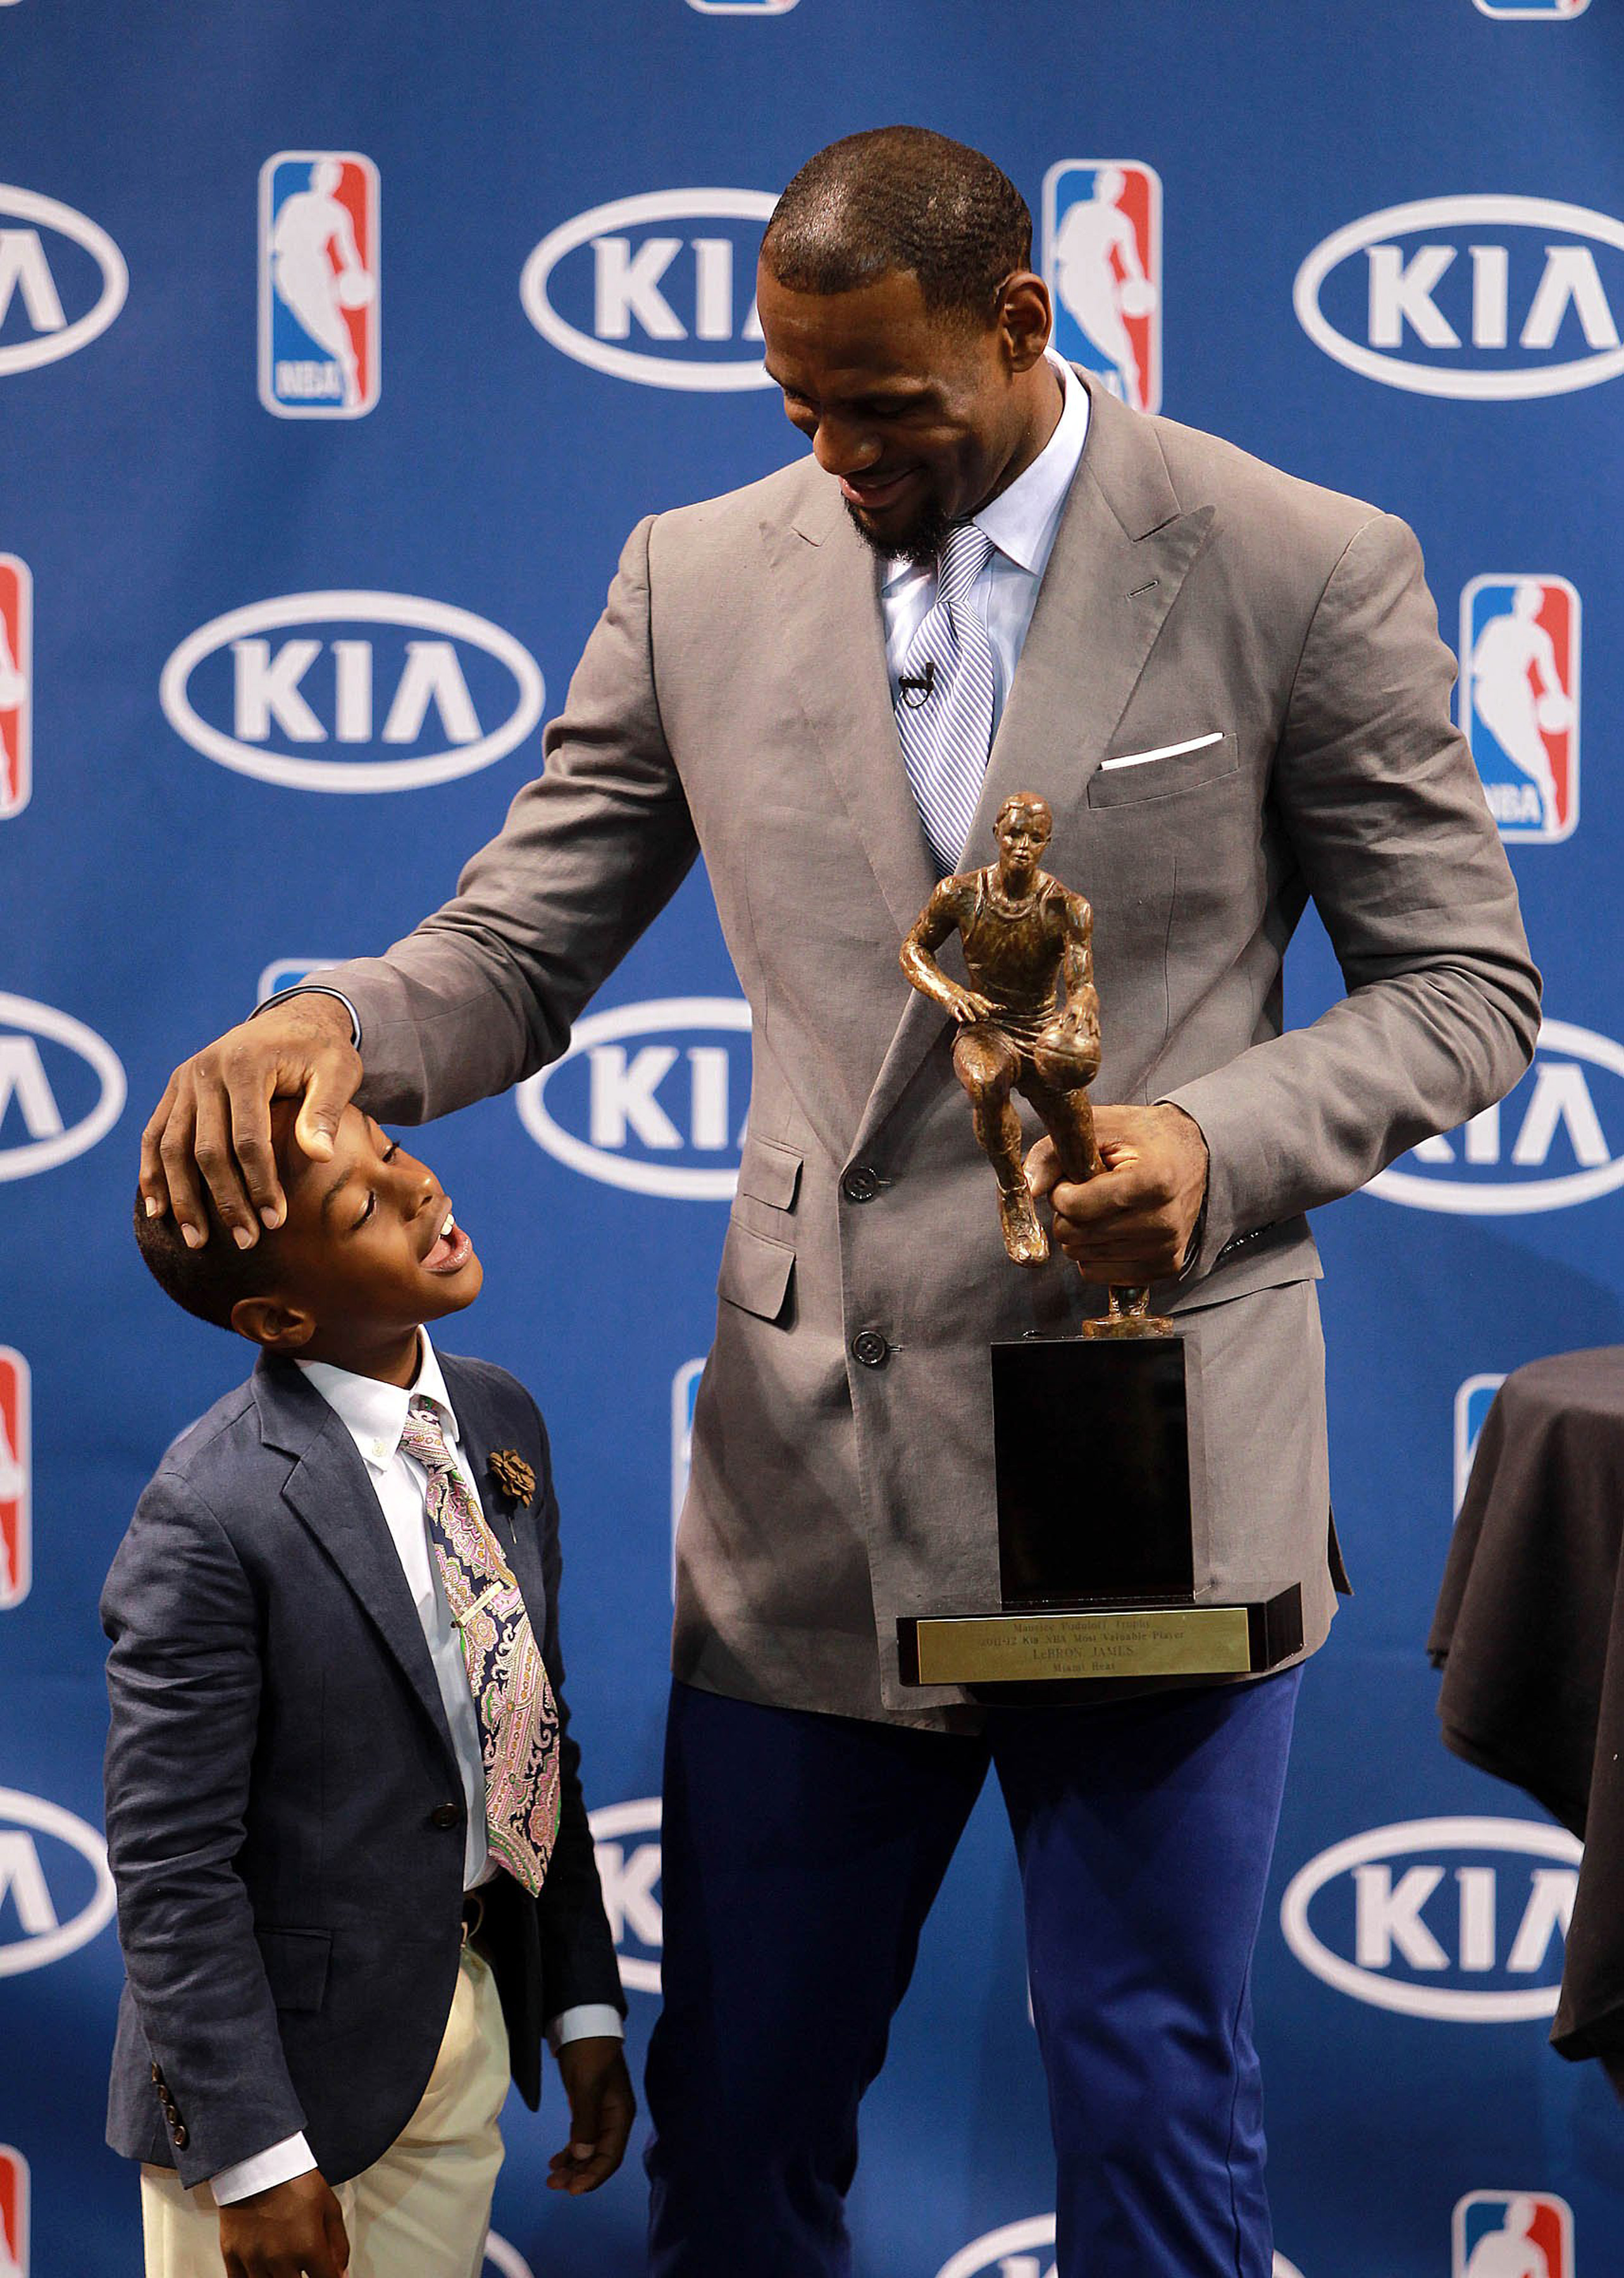 Bronny, et LeBron James lors de la conférence de presse où LeBron James a reçu son prix NBA MVP 2012 à Miami, 2012 | Source : Getty Images